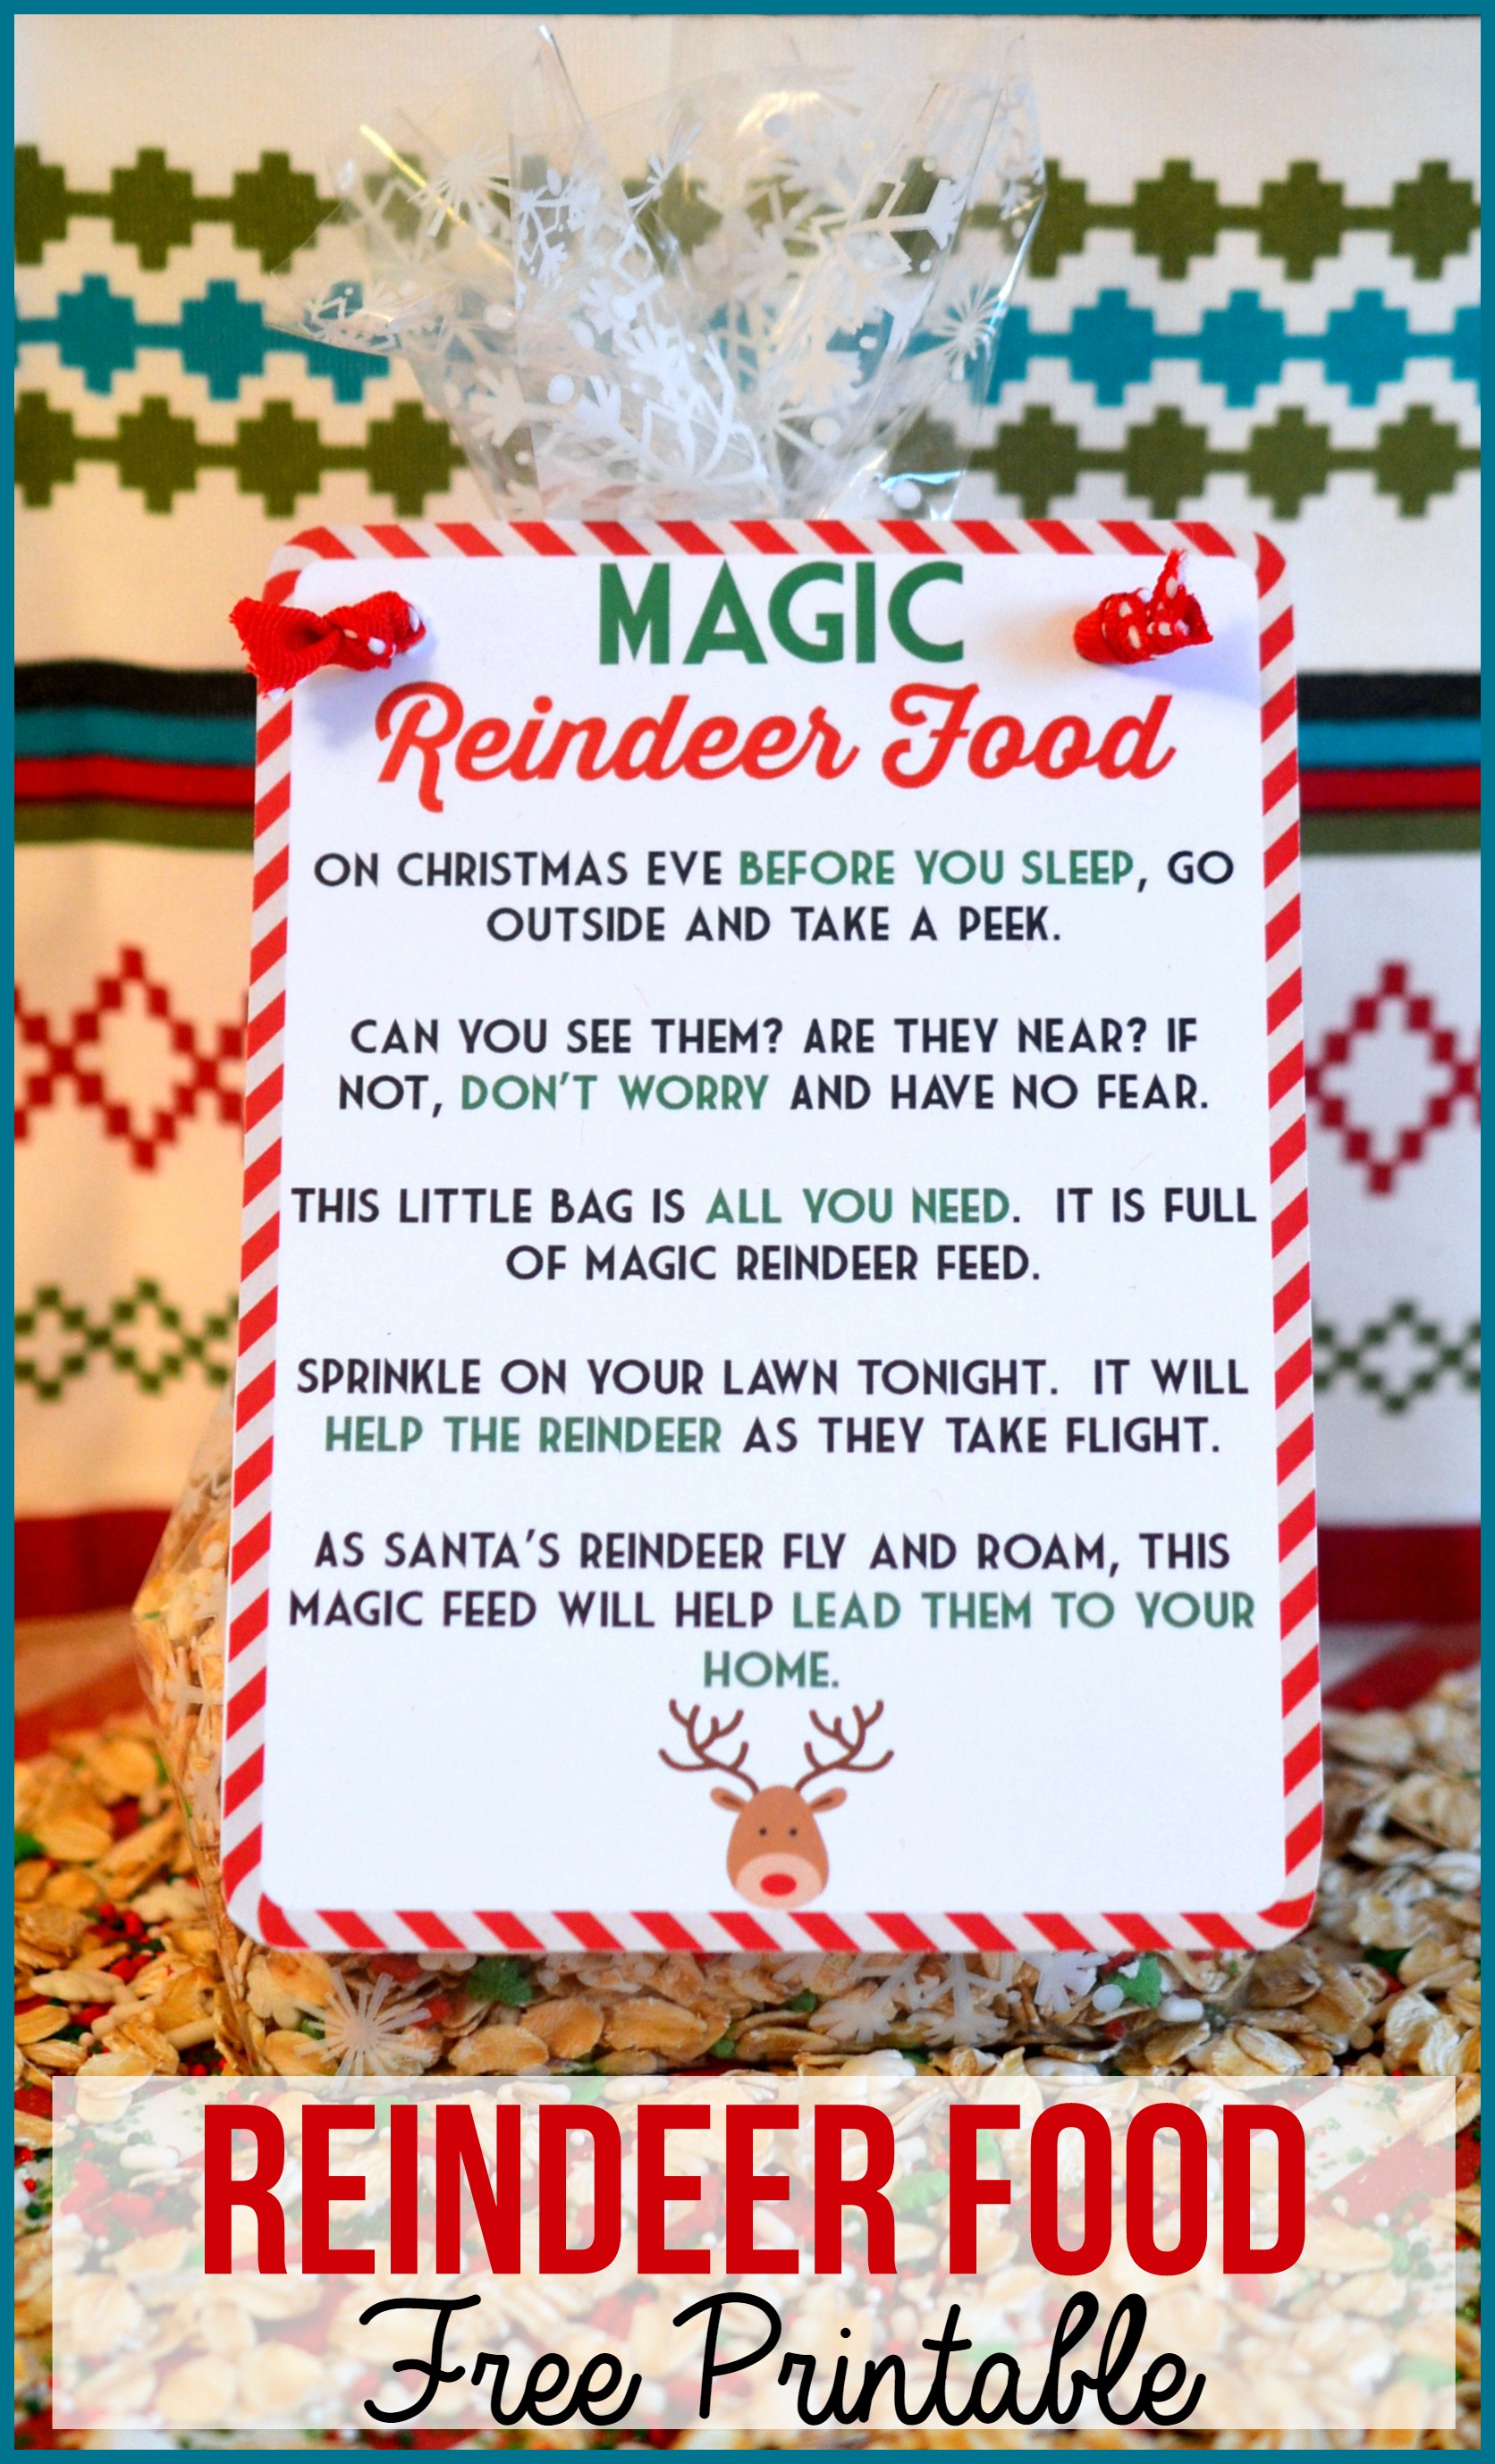 Magic Reindeer Food Poem & Free Printable.  Also includes the Reindeer Food recipe.